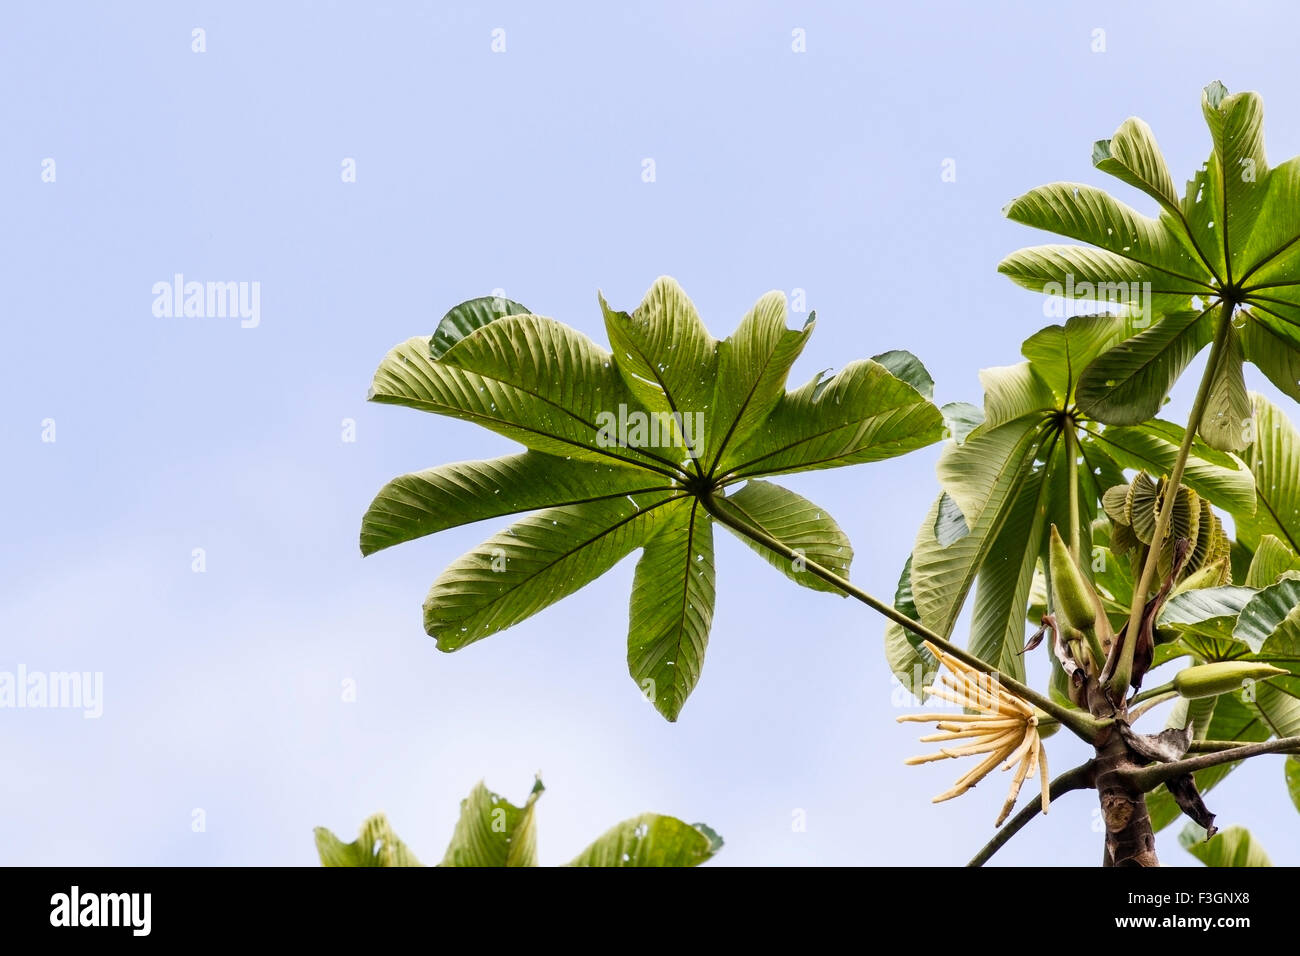 Cecropia tree in rainforest jungle, Ecuador, South America Stock Photo